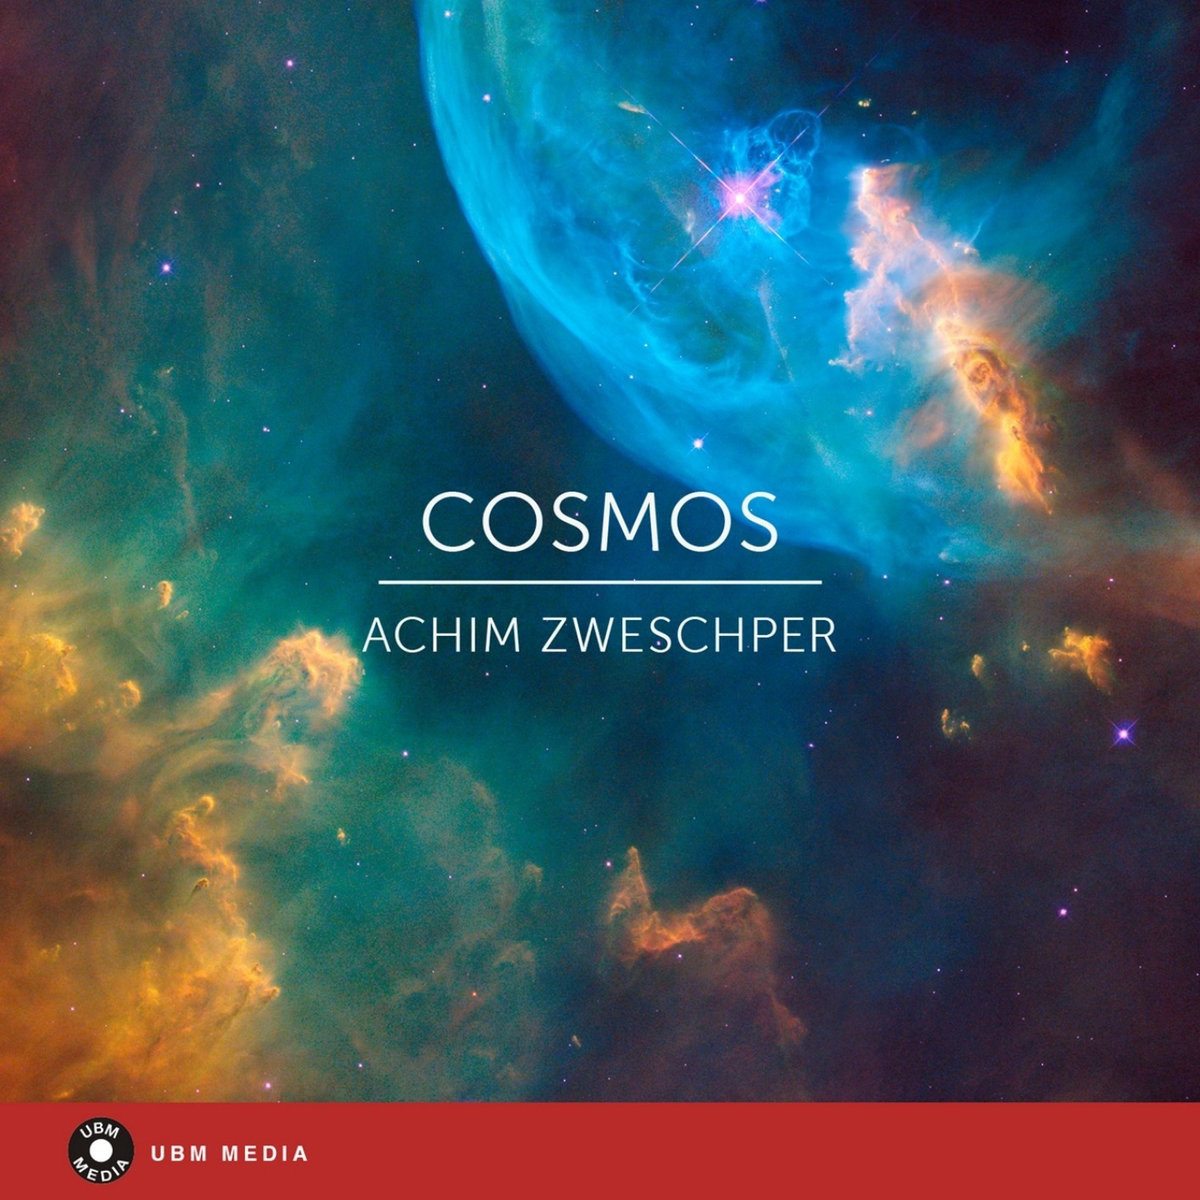 Космо песенка. Cosmo Music. B.I - half album [Cosmos].